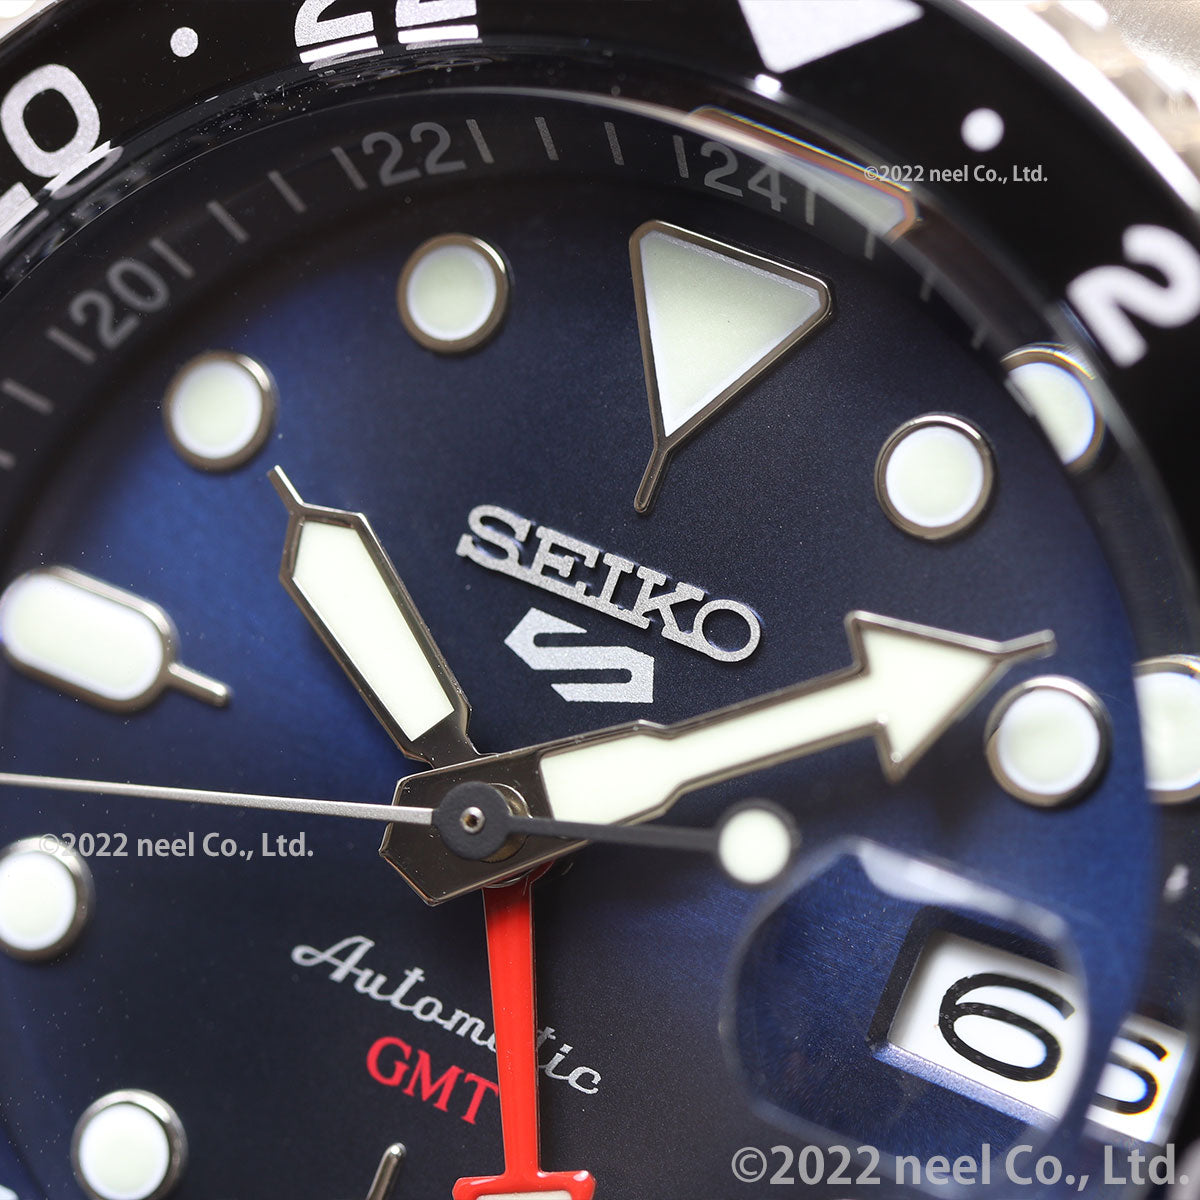 セイコー5 スポーツ SEIKO 5 SPORTS 自動巻き メカニカル 流通限定モデル 腕時計 メンズ セイコーファイブ スポーツ SKX Sports GMT SBSC003